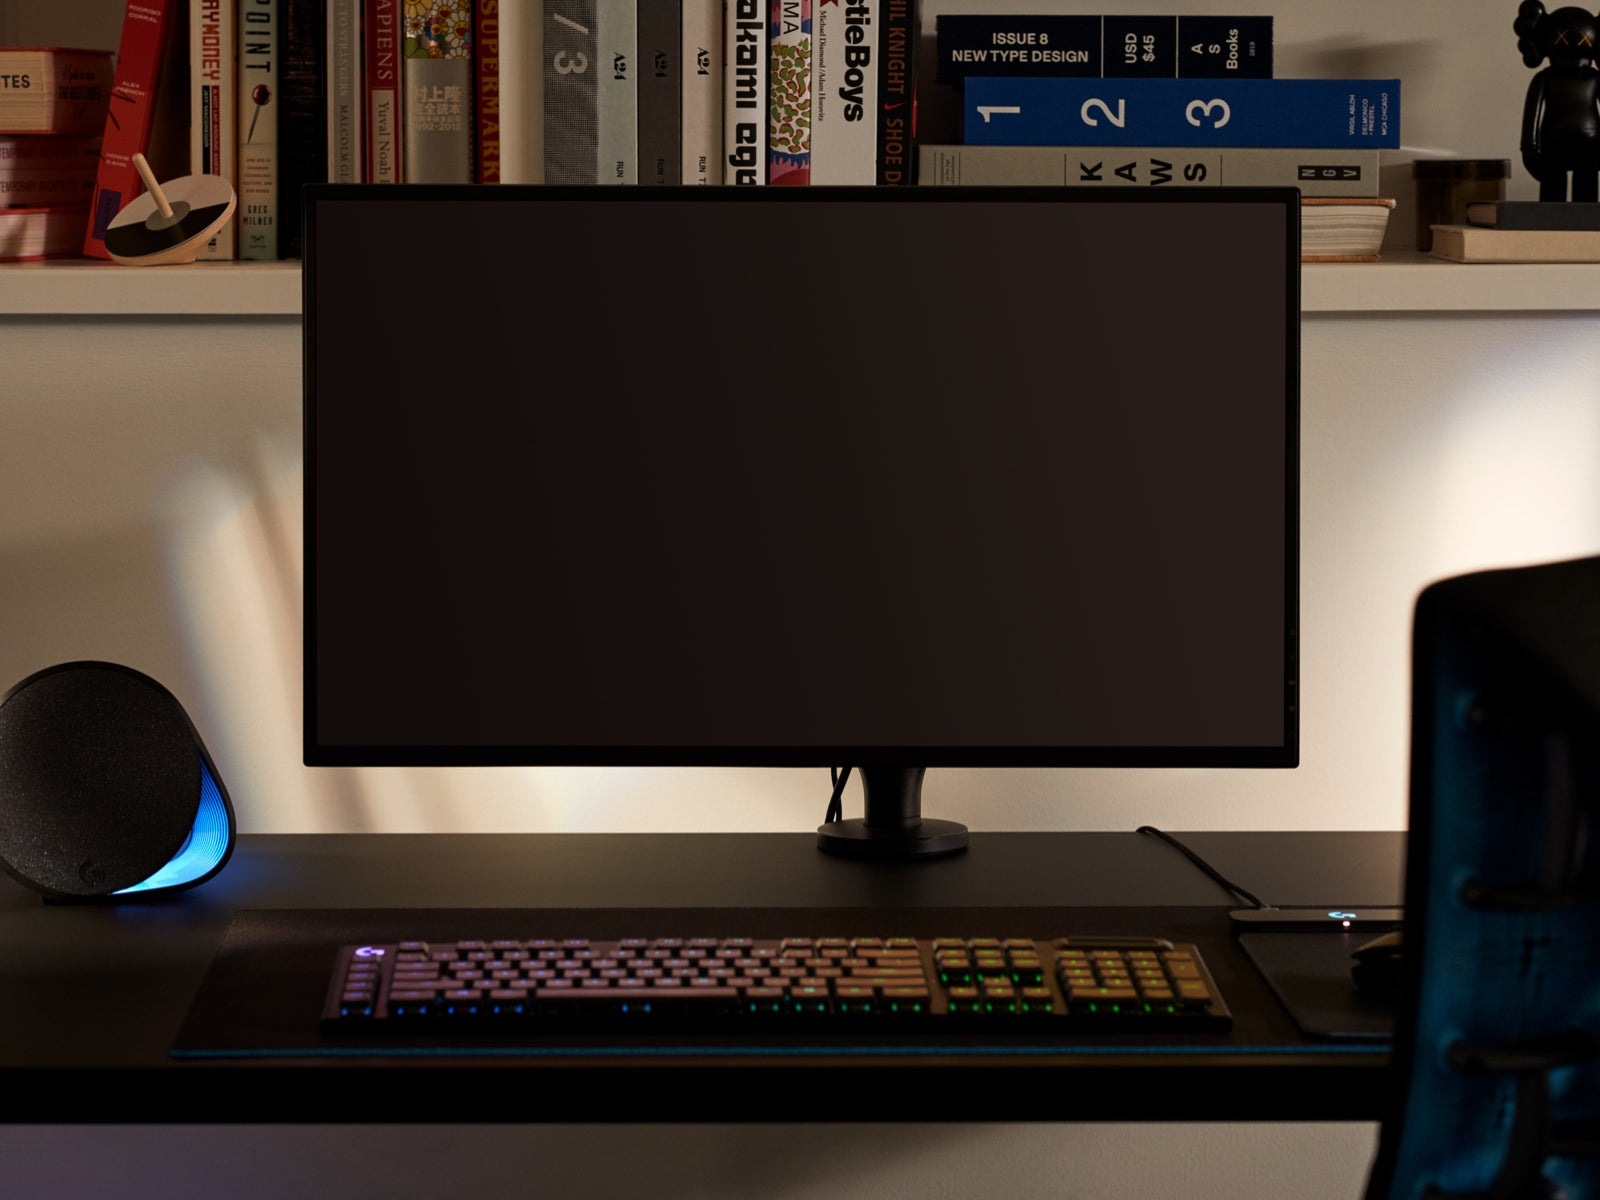 桌上的挂臂连接着一台大型显示器，表示Ollin显示器挂臂可以容纳所有尺寸的屏幕，显示器前面有一个键盘，背后的架子上摆放着各种物品。